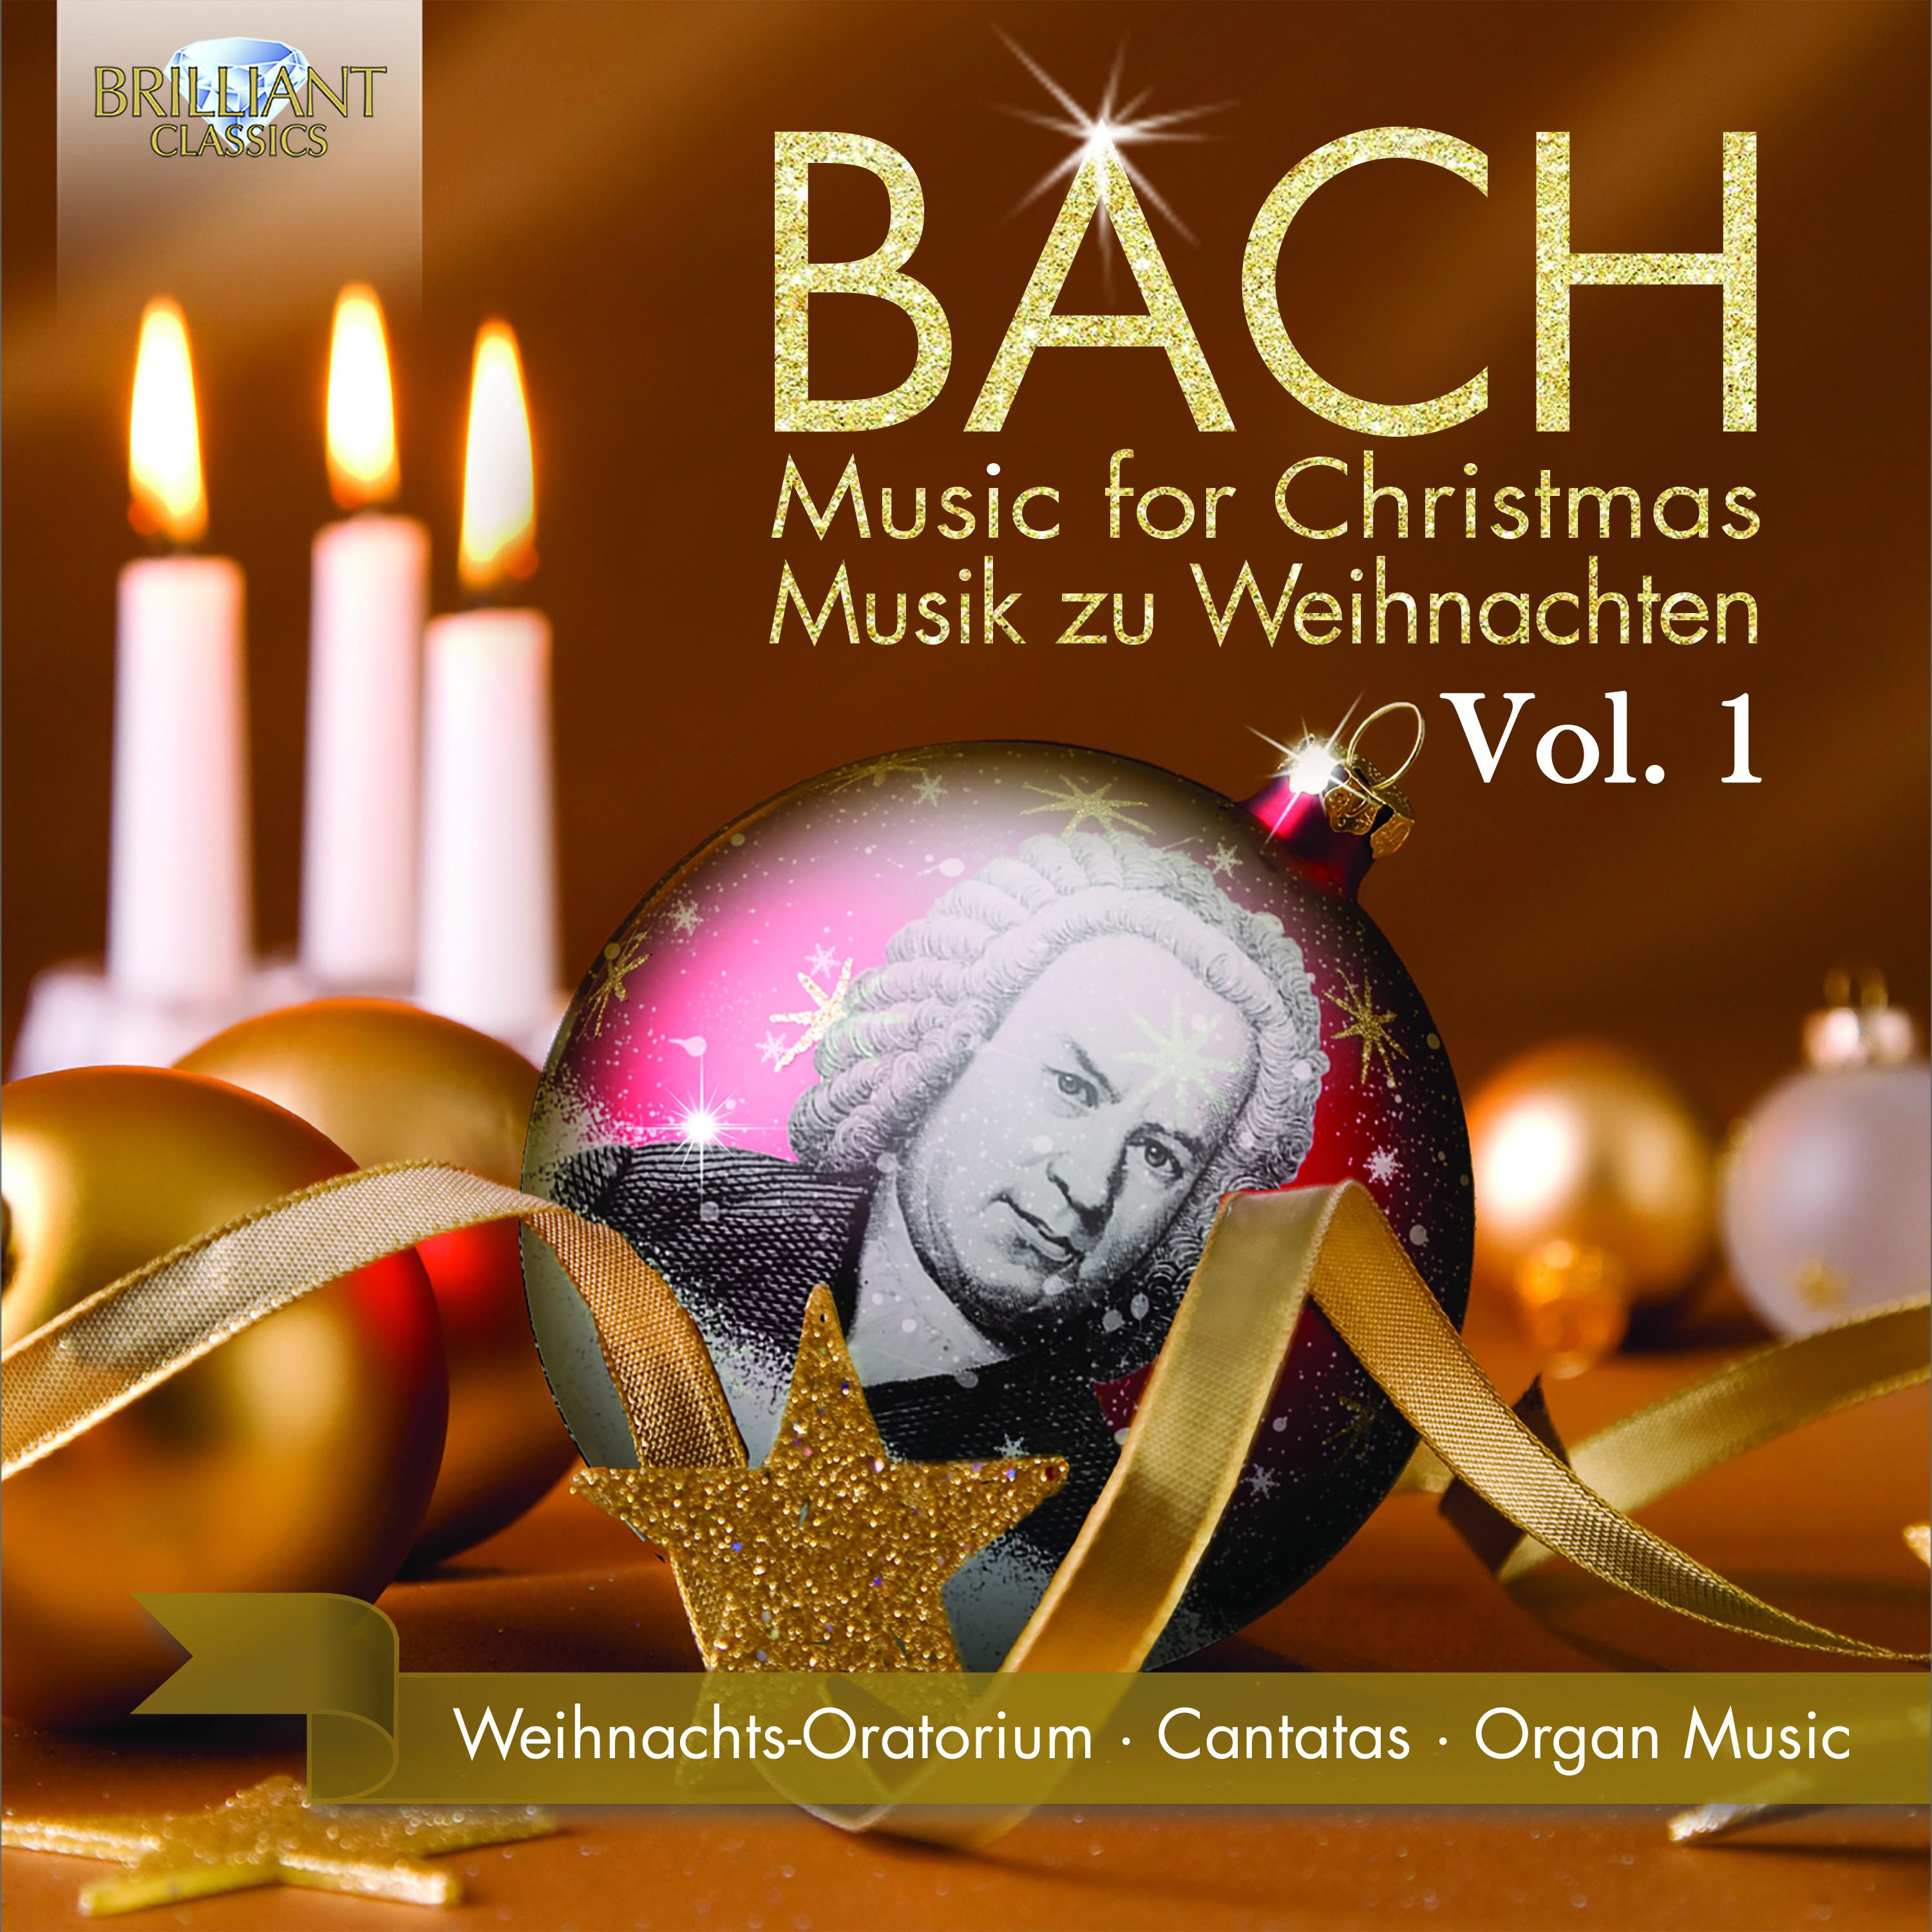 Christmas Oratorio, BWV 248, Pt. 4: VII. Chorale. Jesus richte mein Beginnen (Chorus)